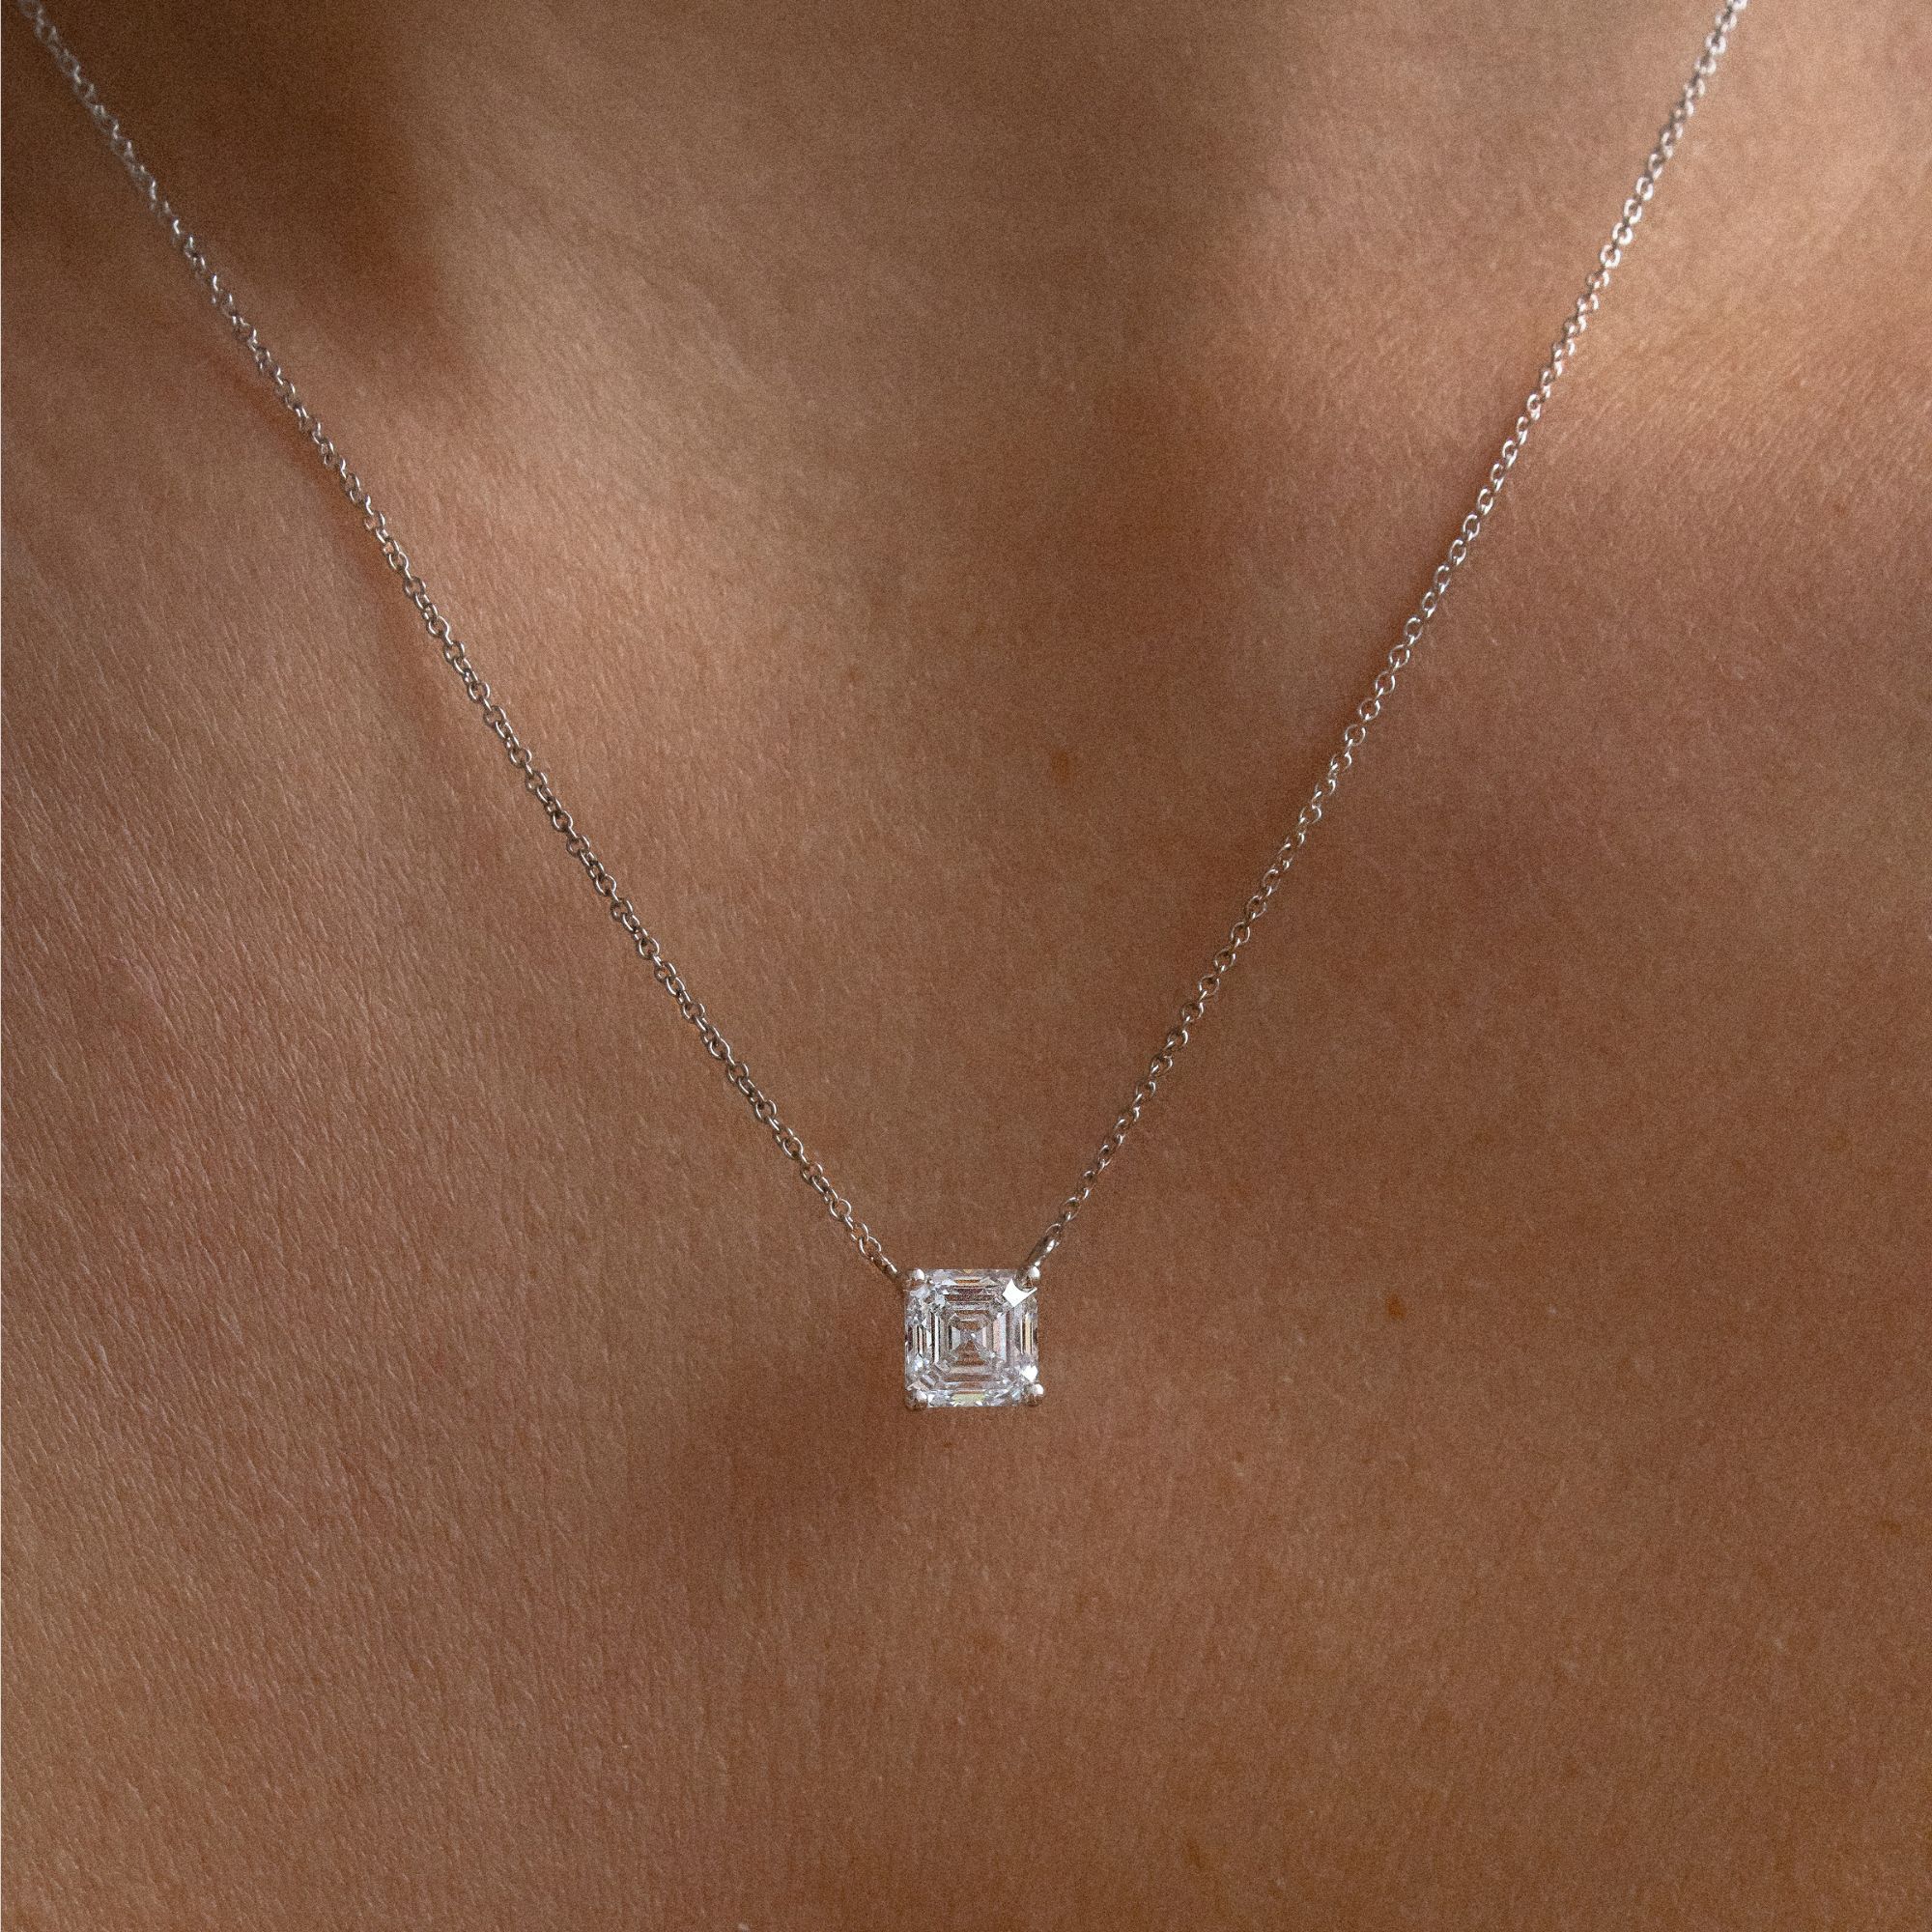 Asscher-Cut Diamond Pendant & Chain. Certified Diamond | 06-01912